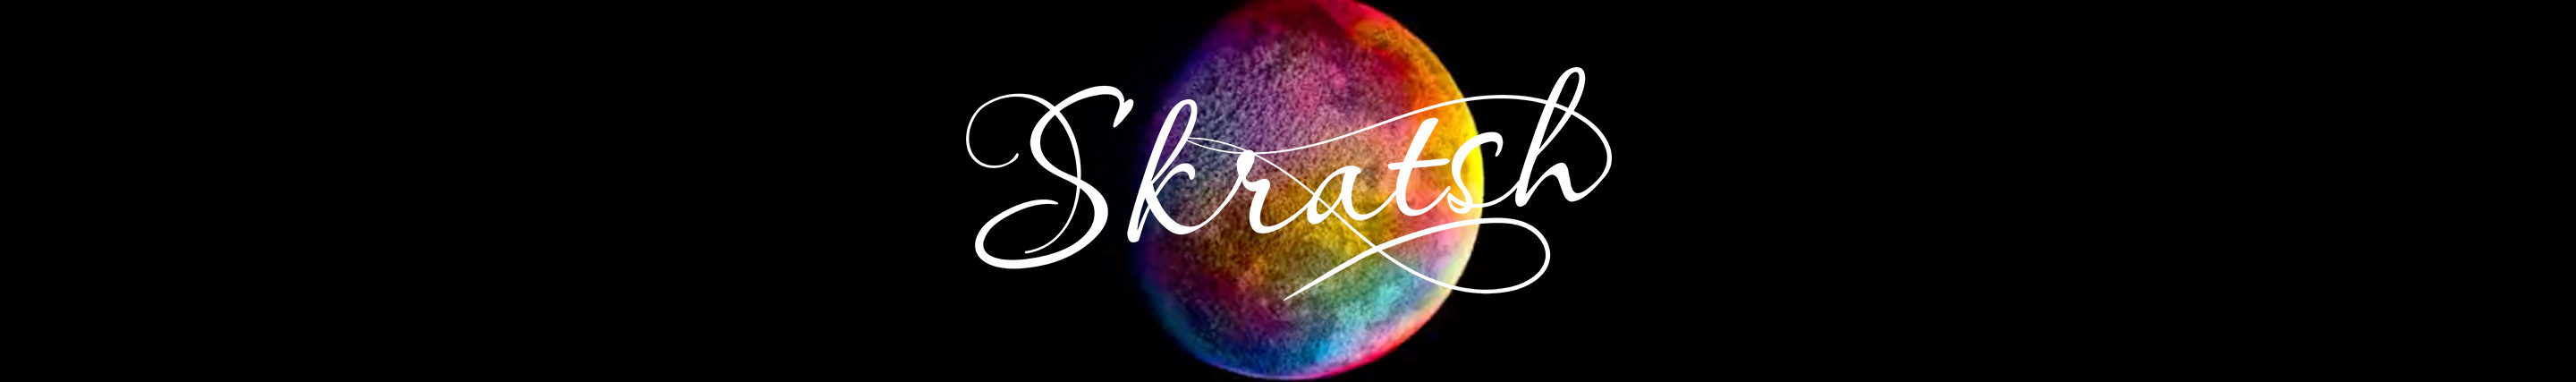 Skratsh Studio's profile banner